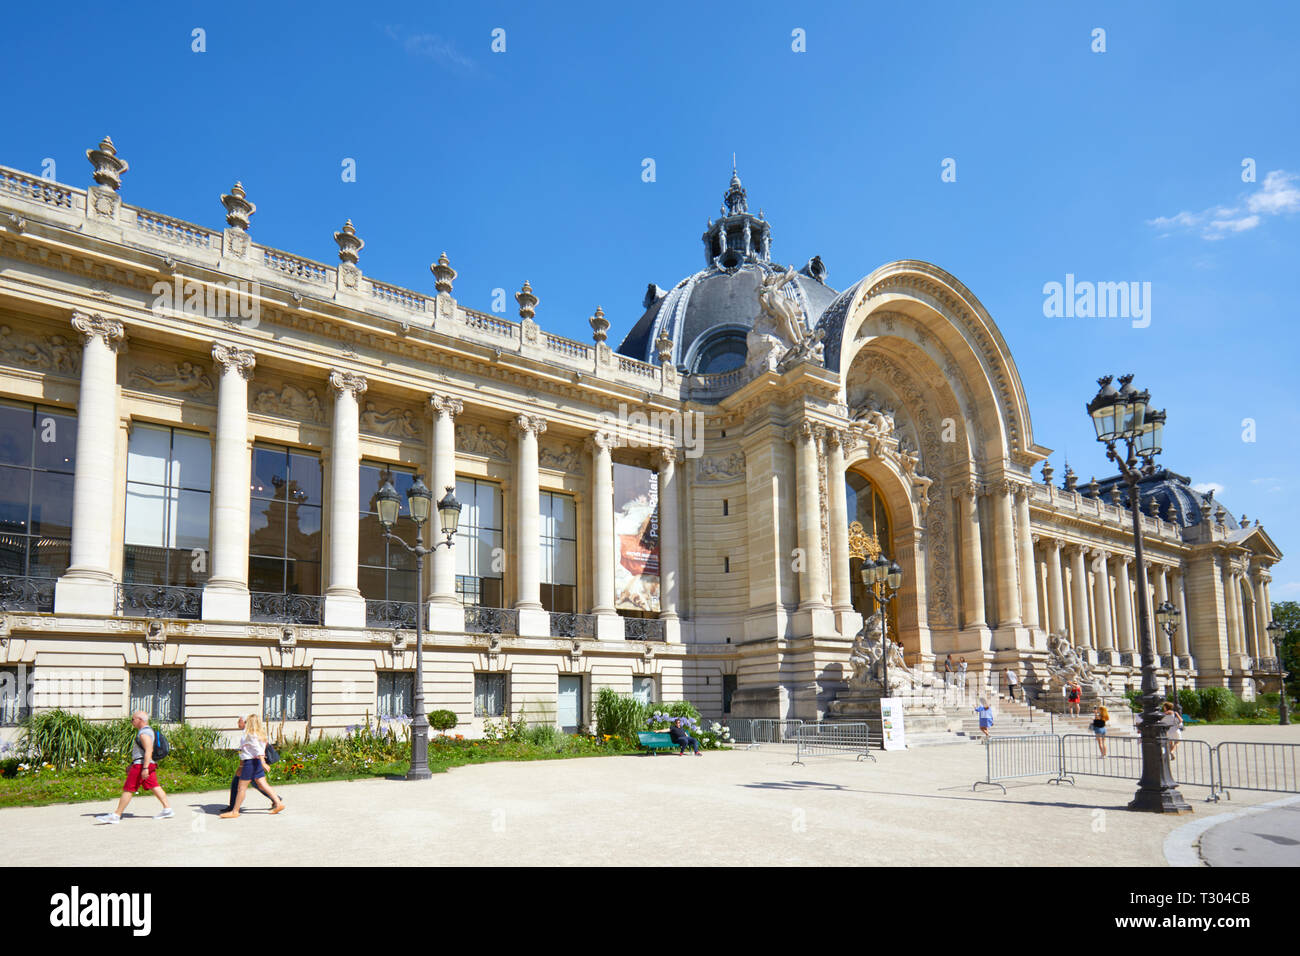 PARIS, FRANCE - 21 juillet 2017 : Petit Palais dans une journée ensoleillée, ciel bleu clair à Paris, France. Banque D'Images